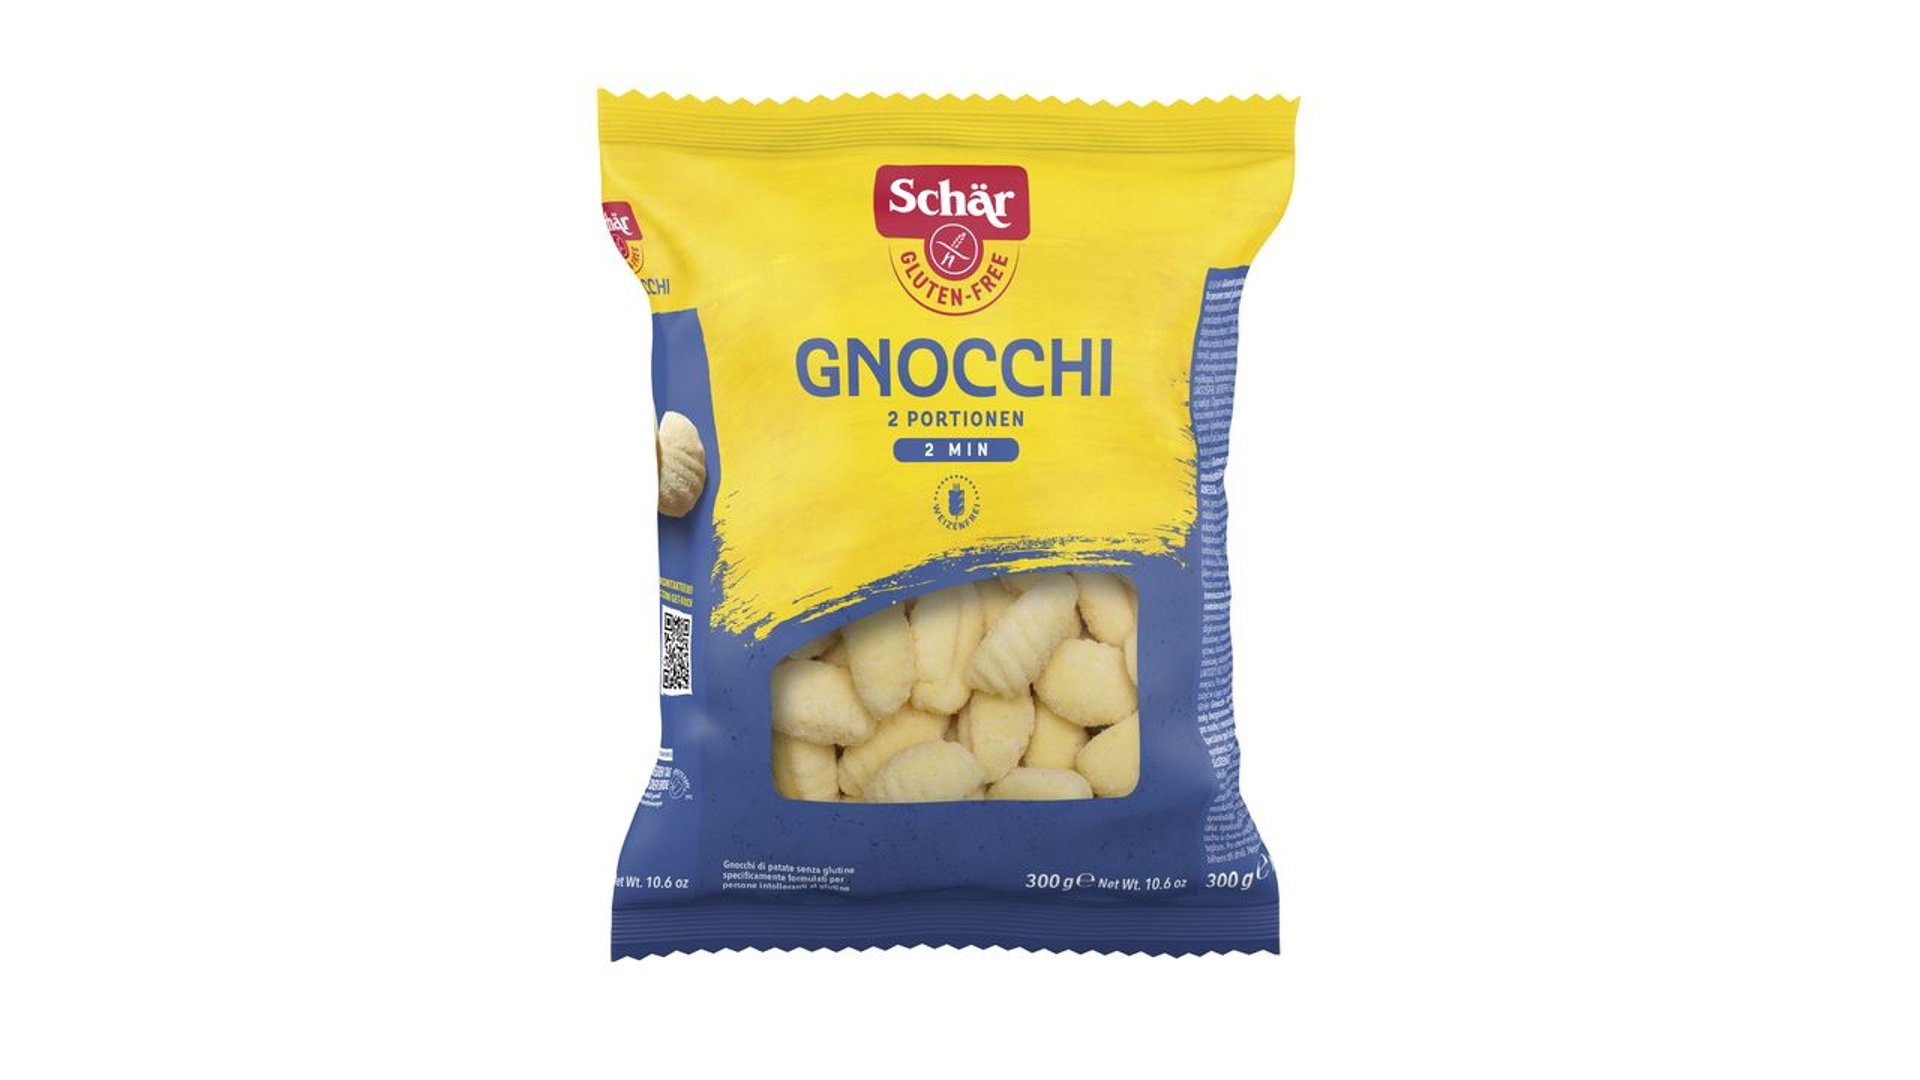 Schär - Gnocchi glutenfrei - 300 g Beutel